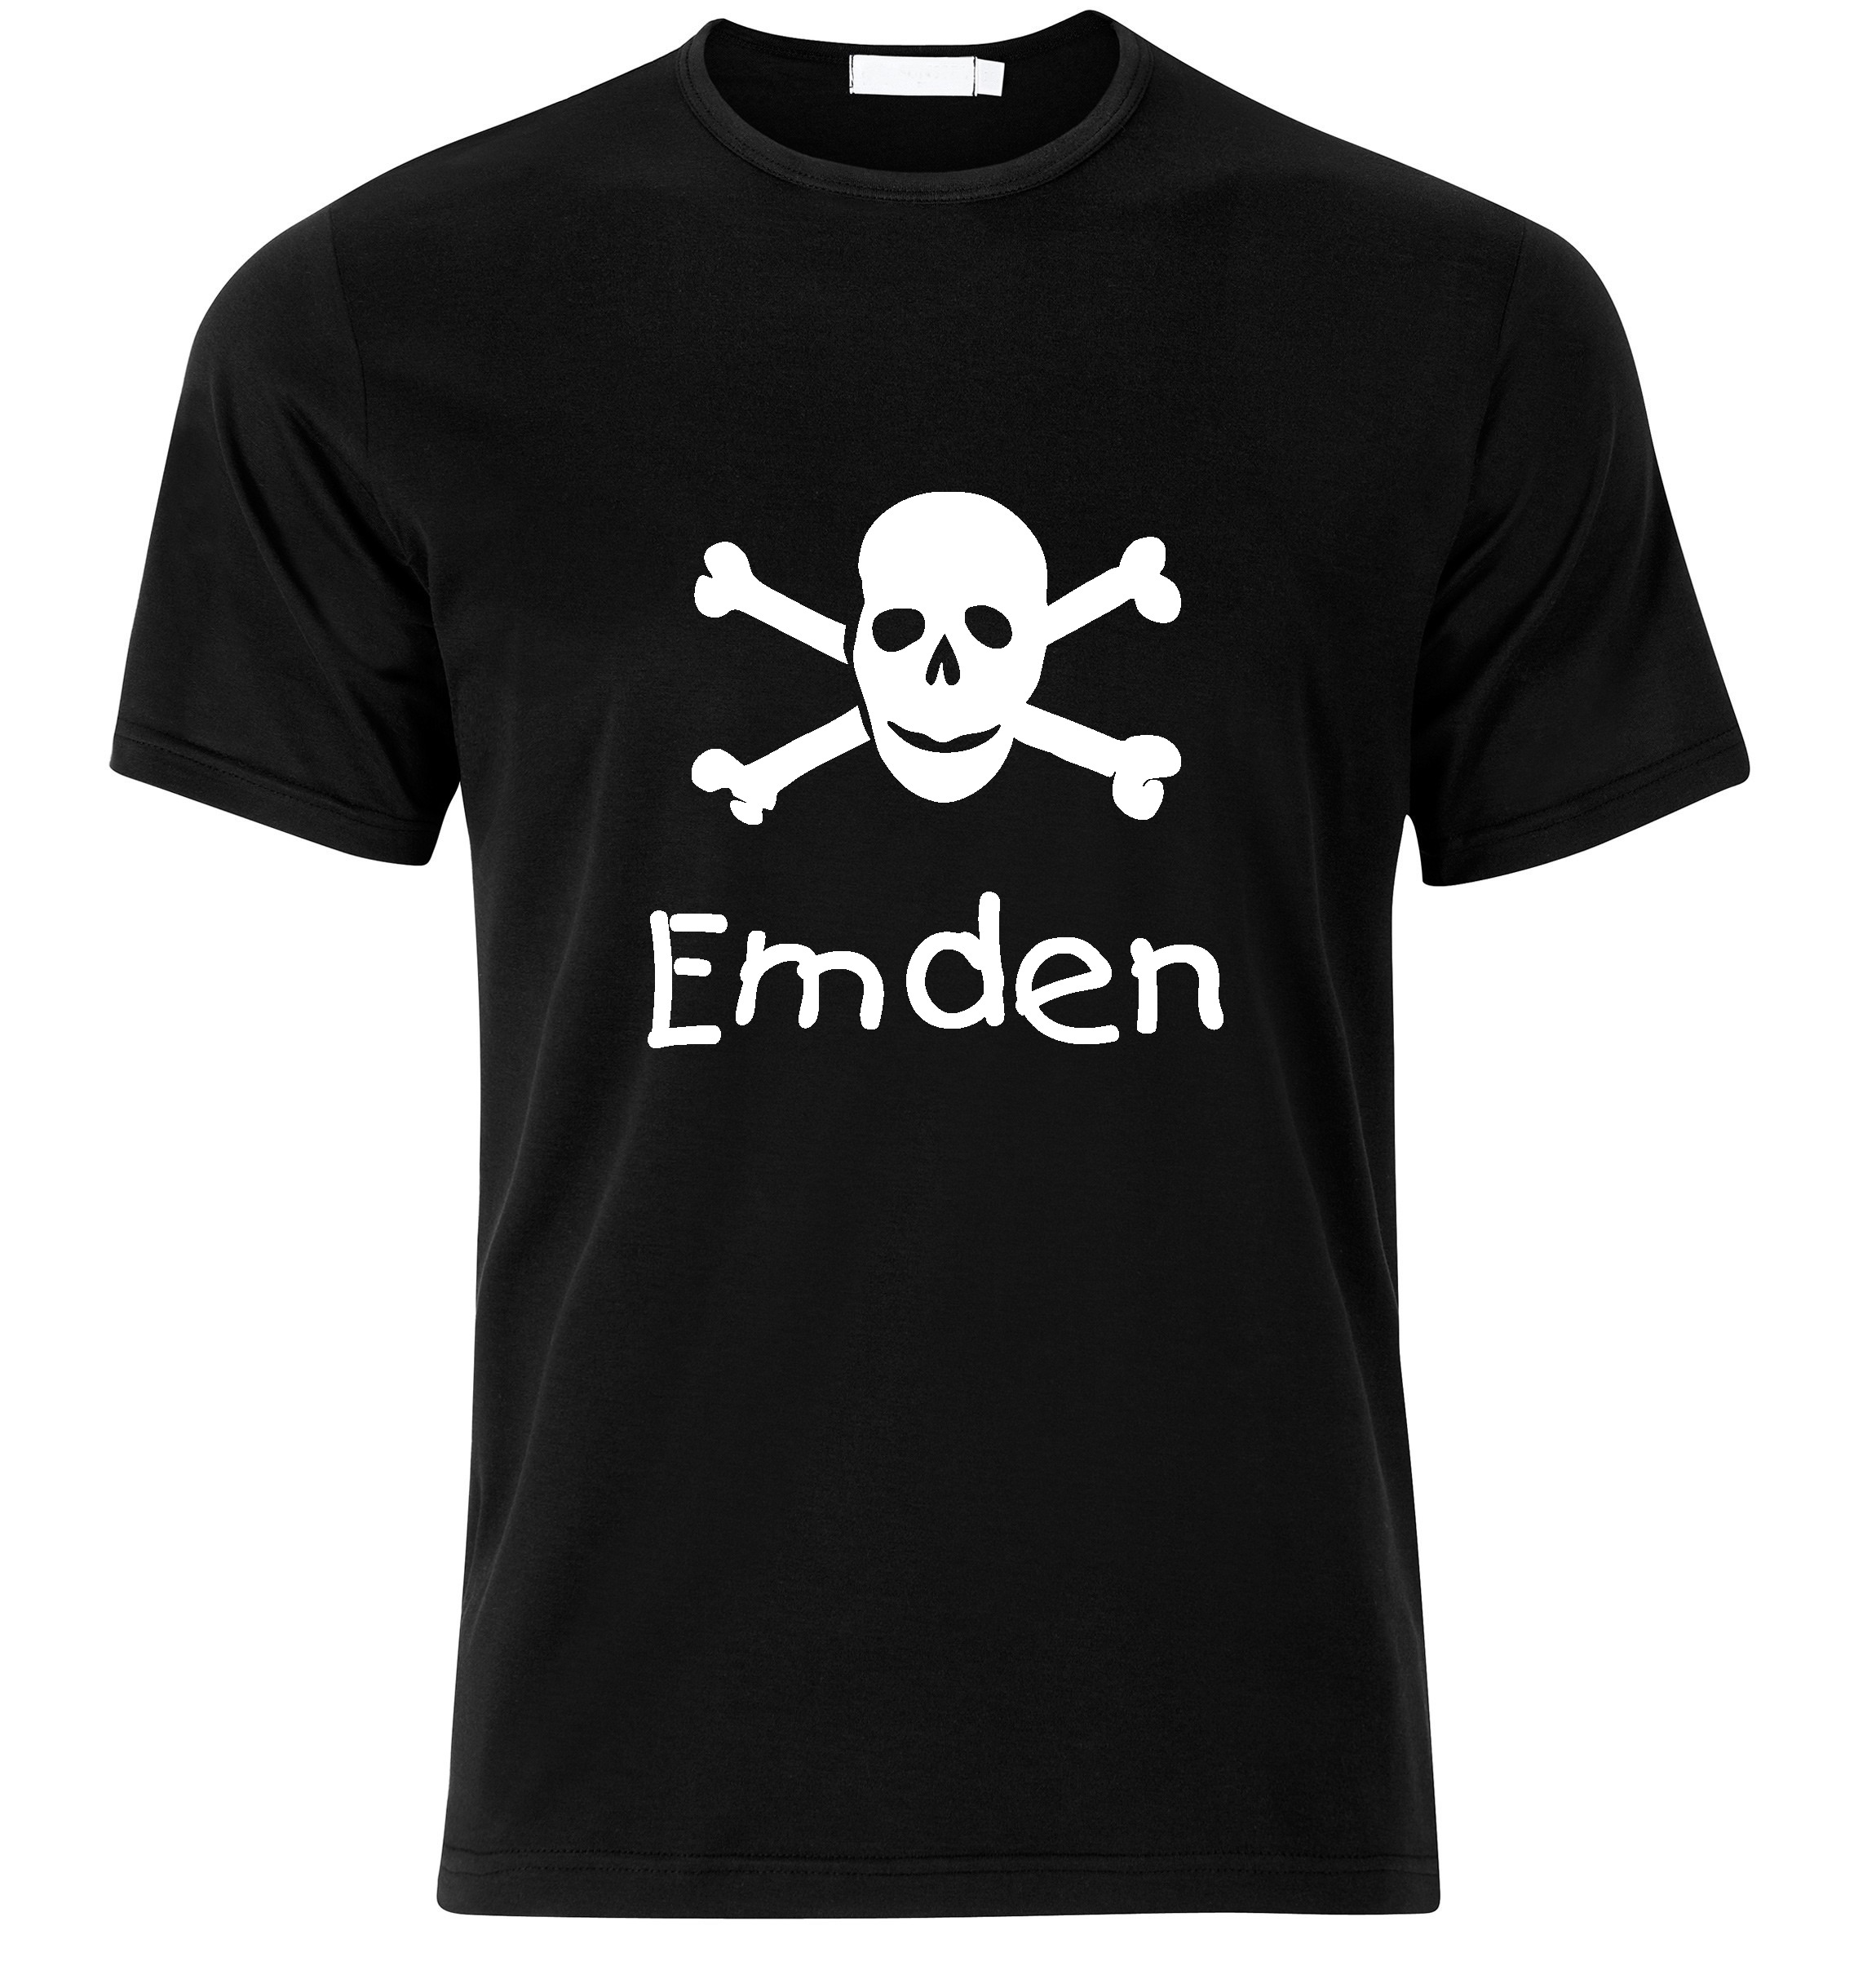 T-Shirt Emden Jolly Roger, Totenkopf